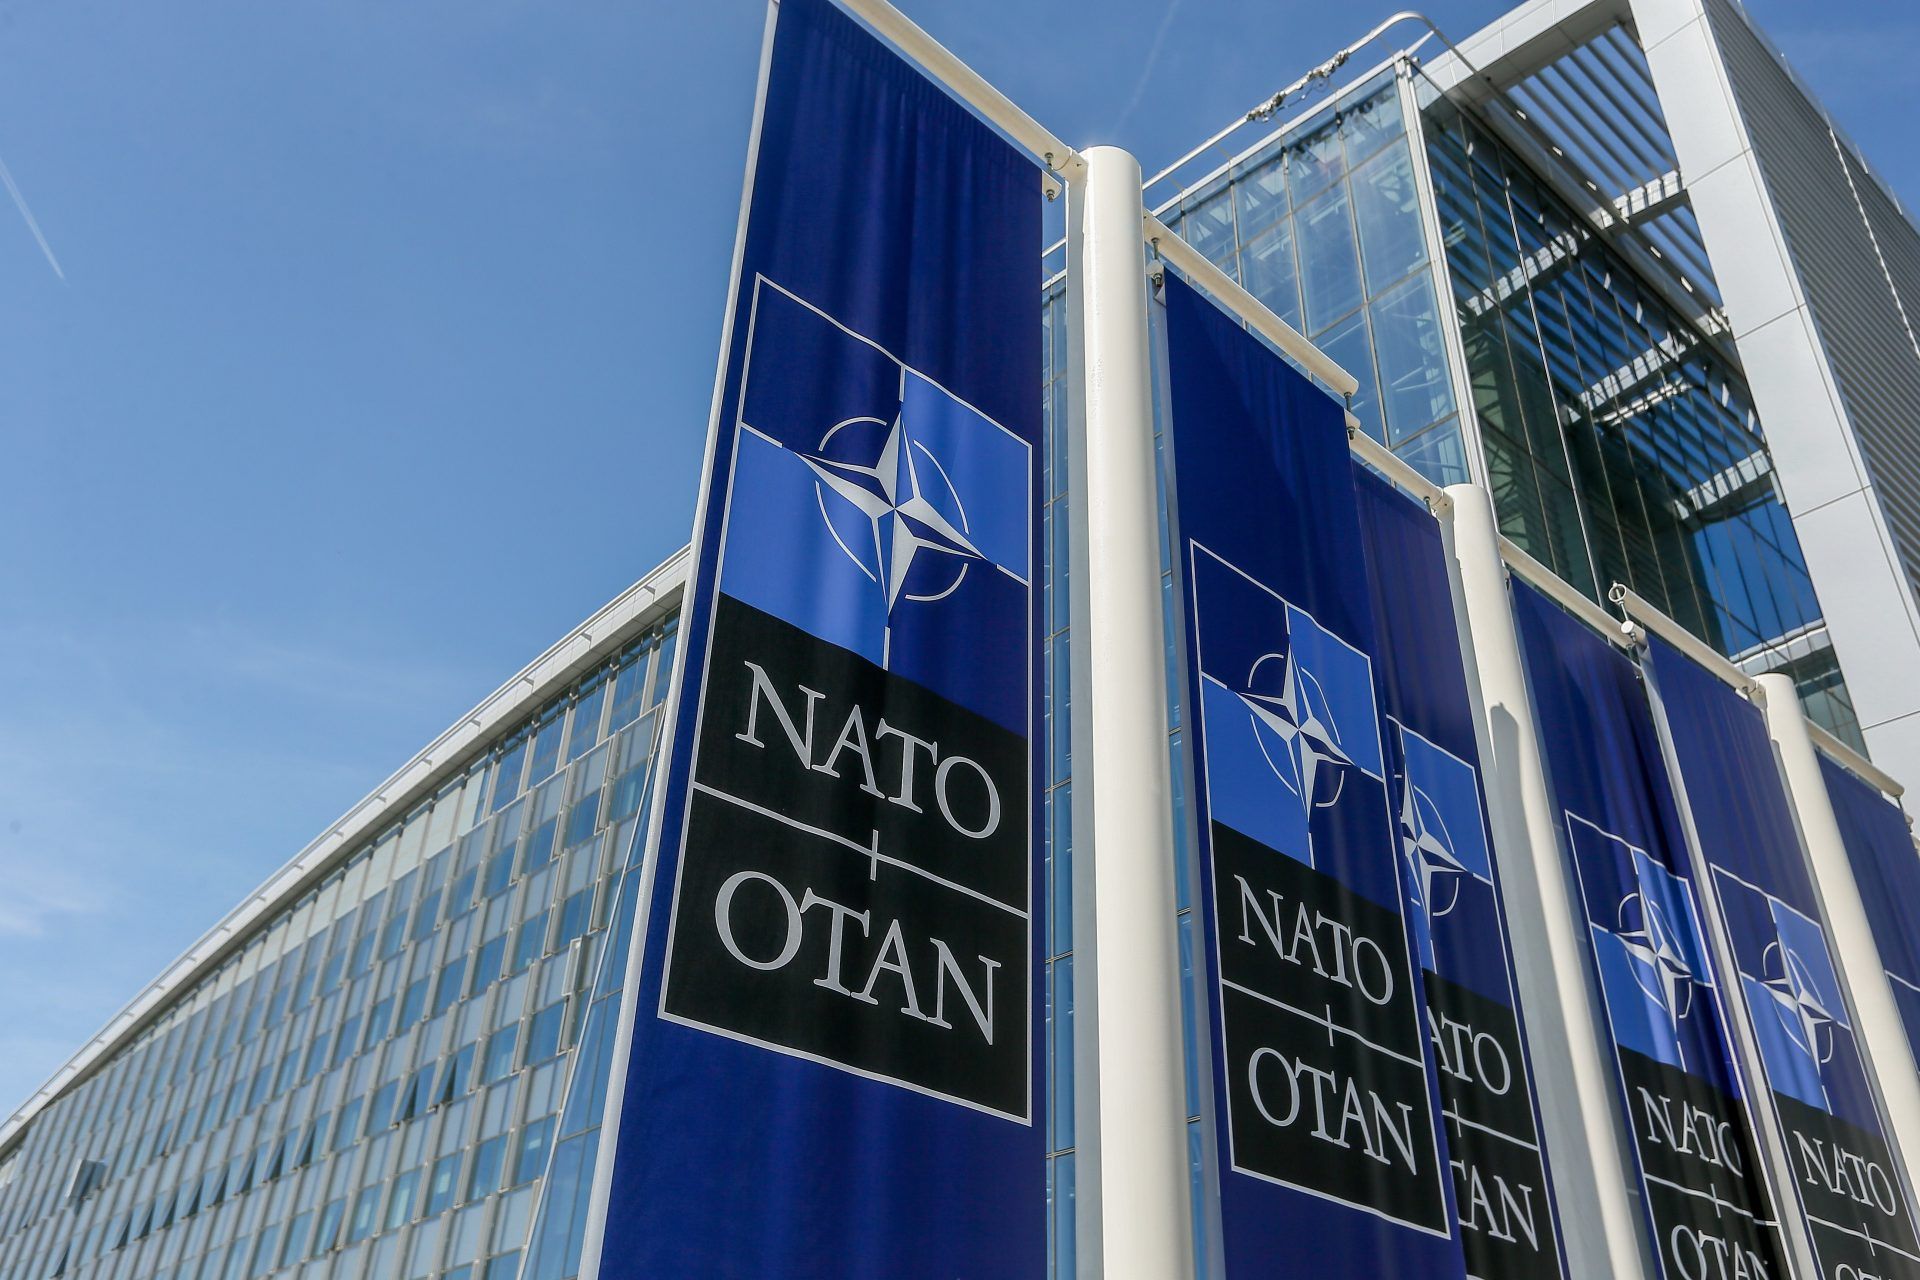 Carteles con el logo de la OTAN. EFE/Stephanie Lecocq